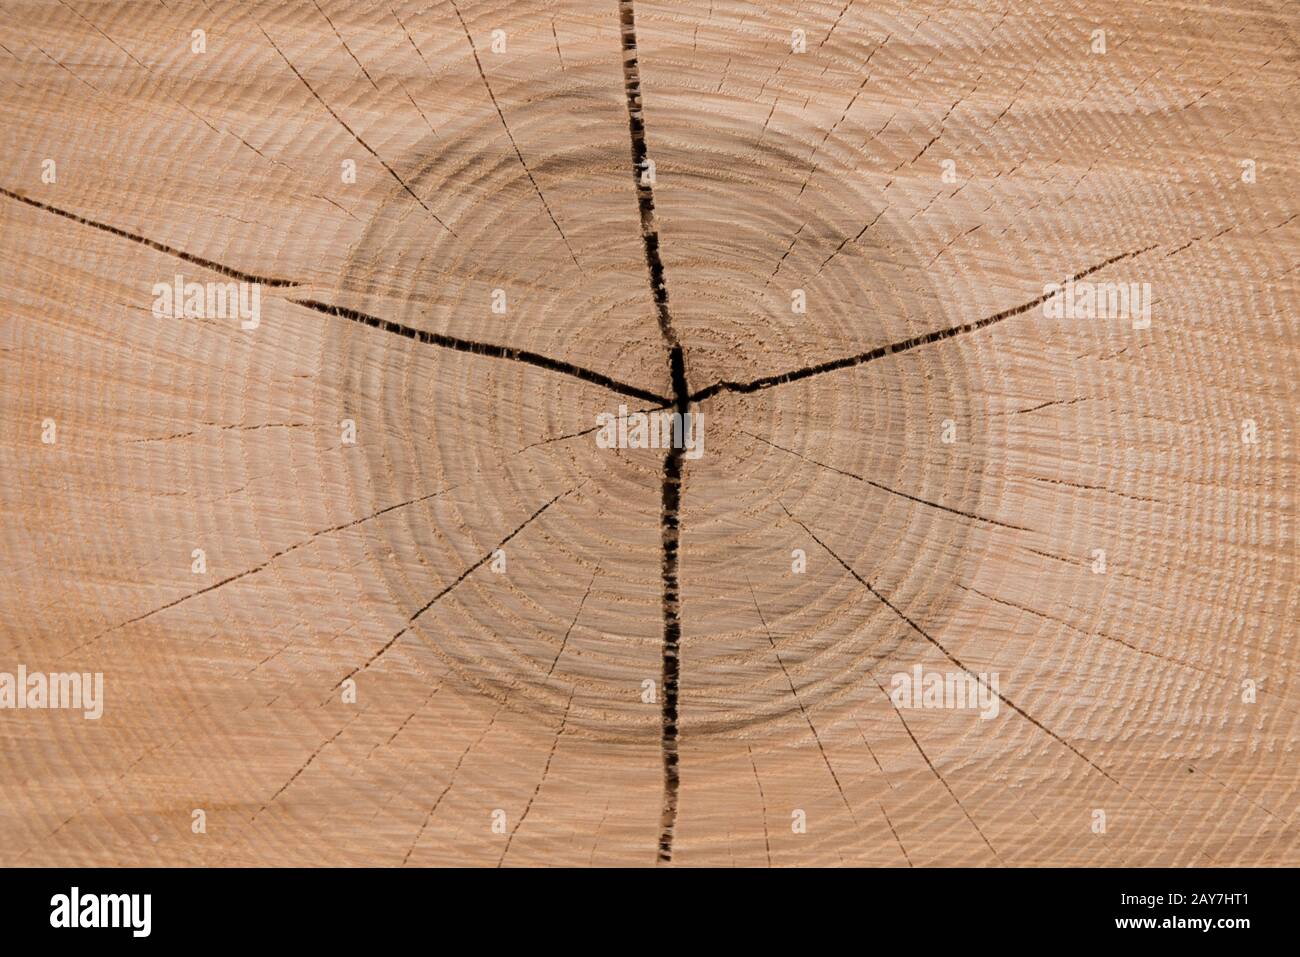 La sezione di un albero mostra gli anelli annuali - primo piano Foto Stock